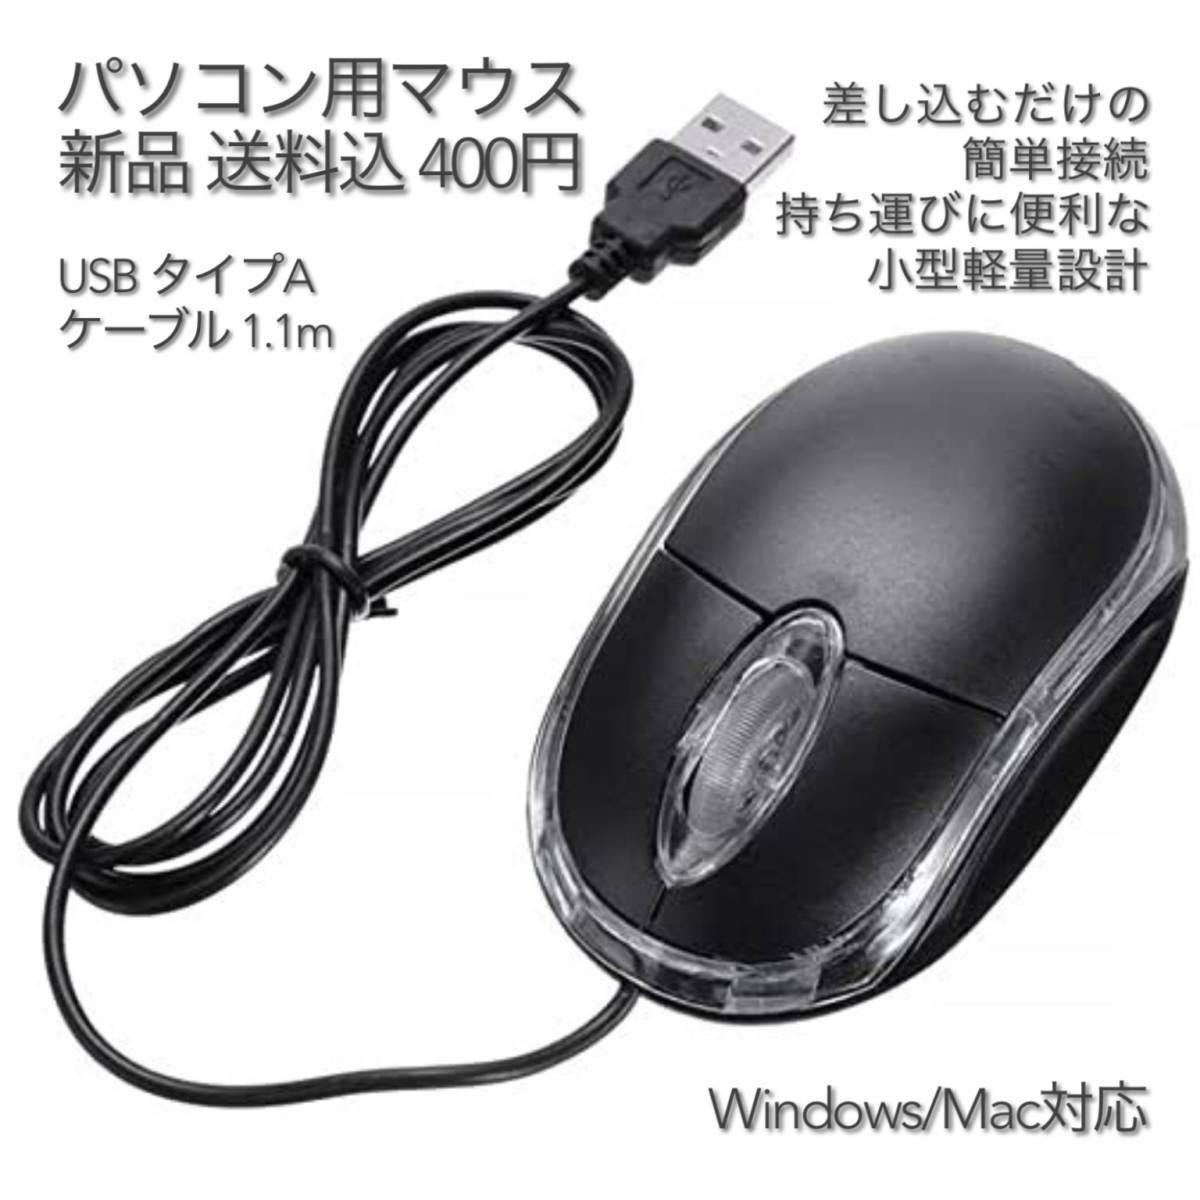 パソコン用マウス USB タイプA ケーブル 1.1m #3 有線 光学式 USB Mouse 在宅勤務 テレワーク リモートワーク 遠隔授業 リモート授業_画像1